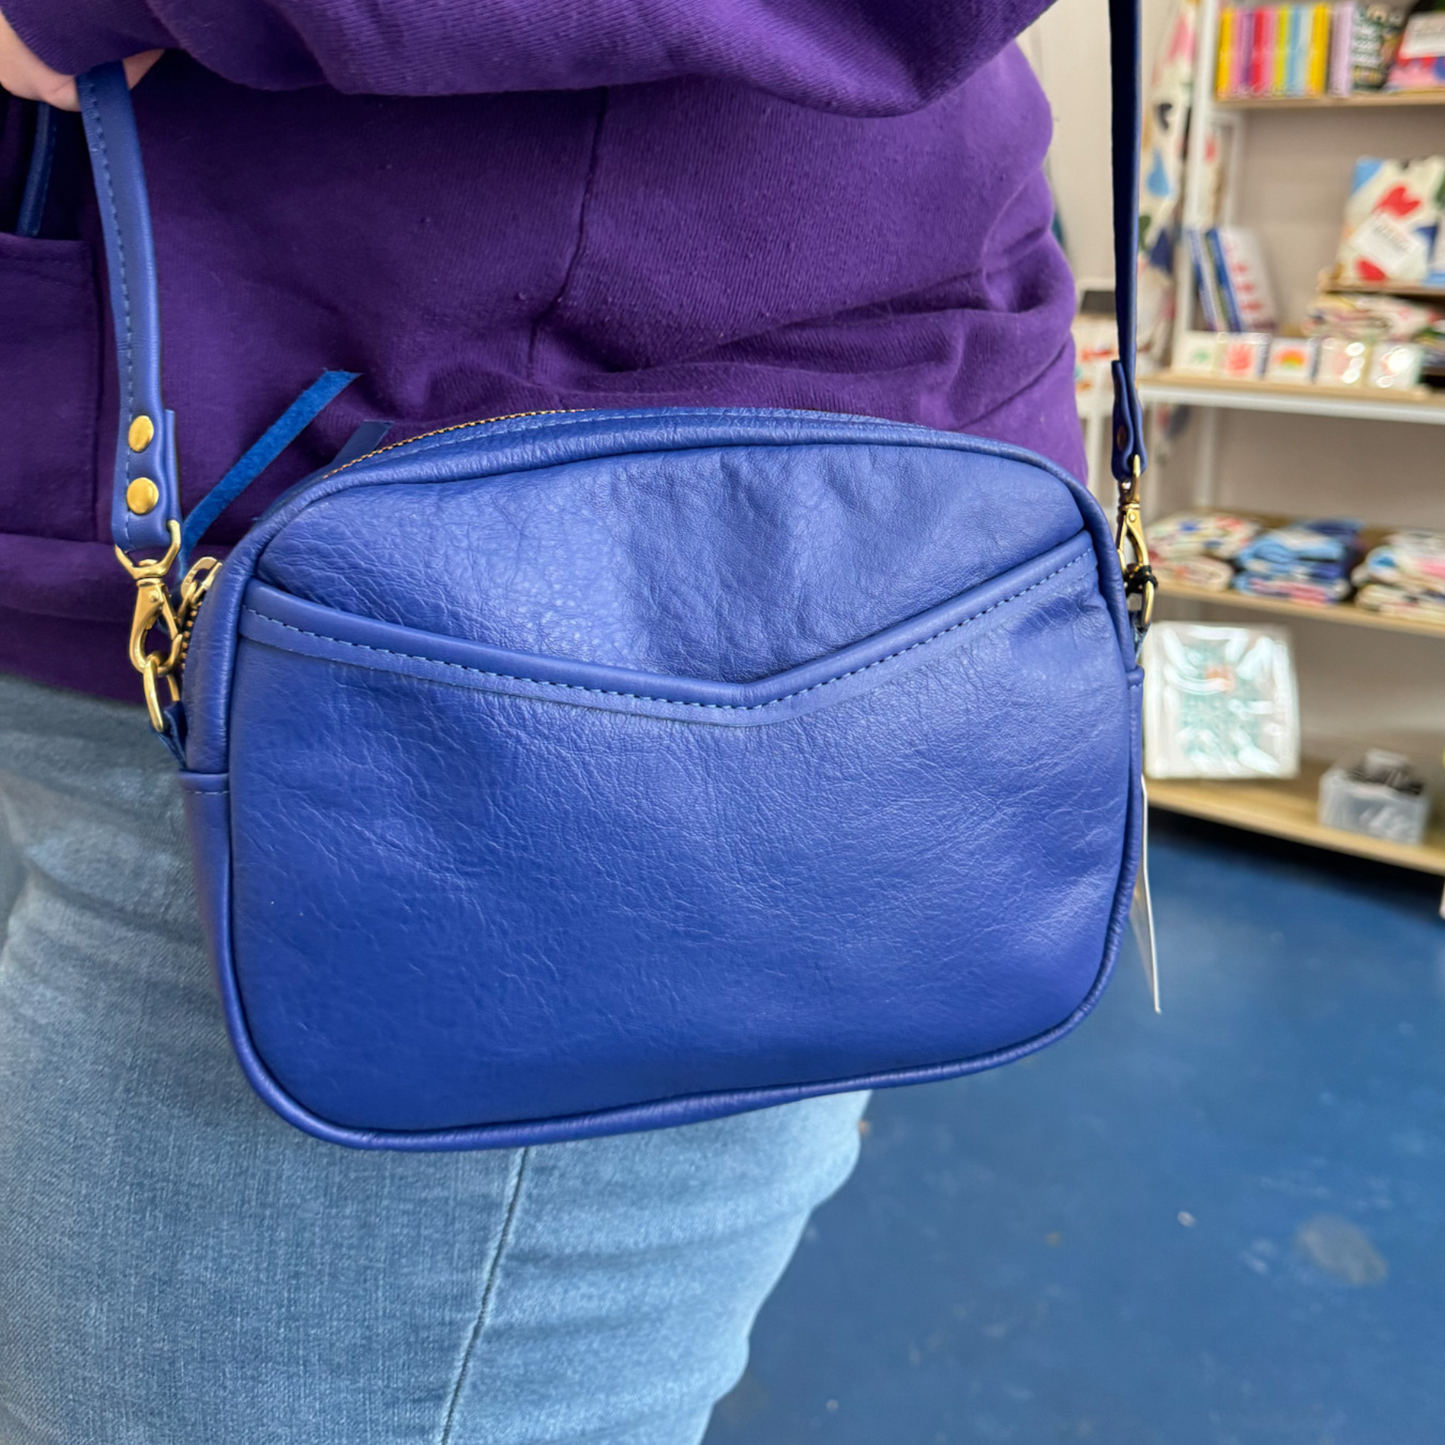 Cubist Crossbody Handbag - 2 colors